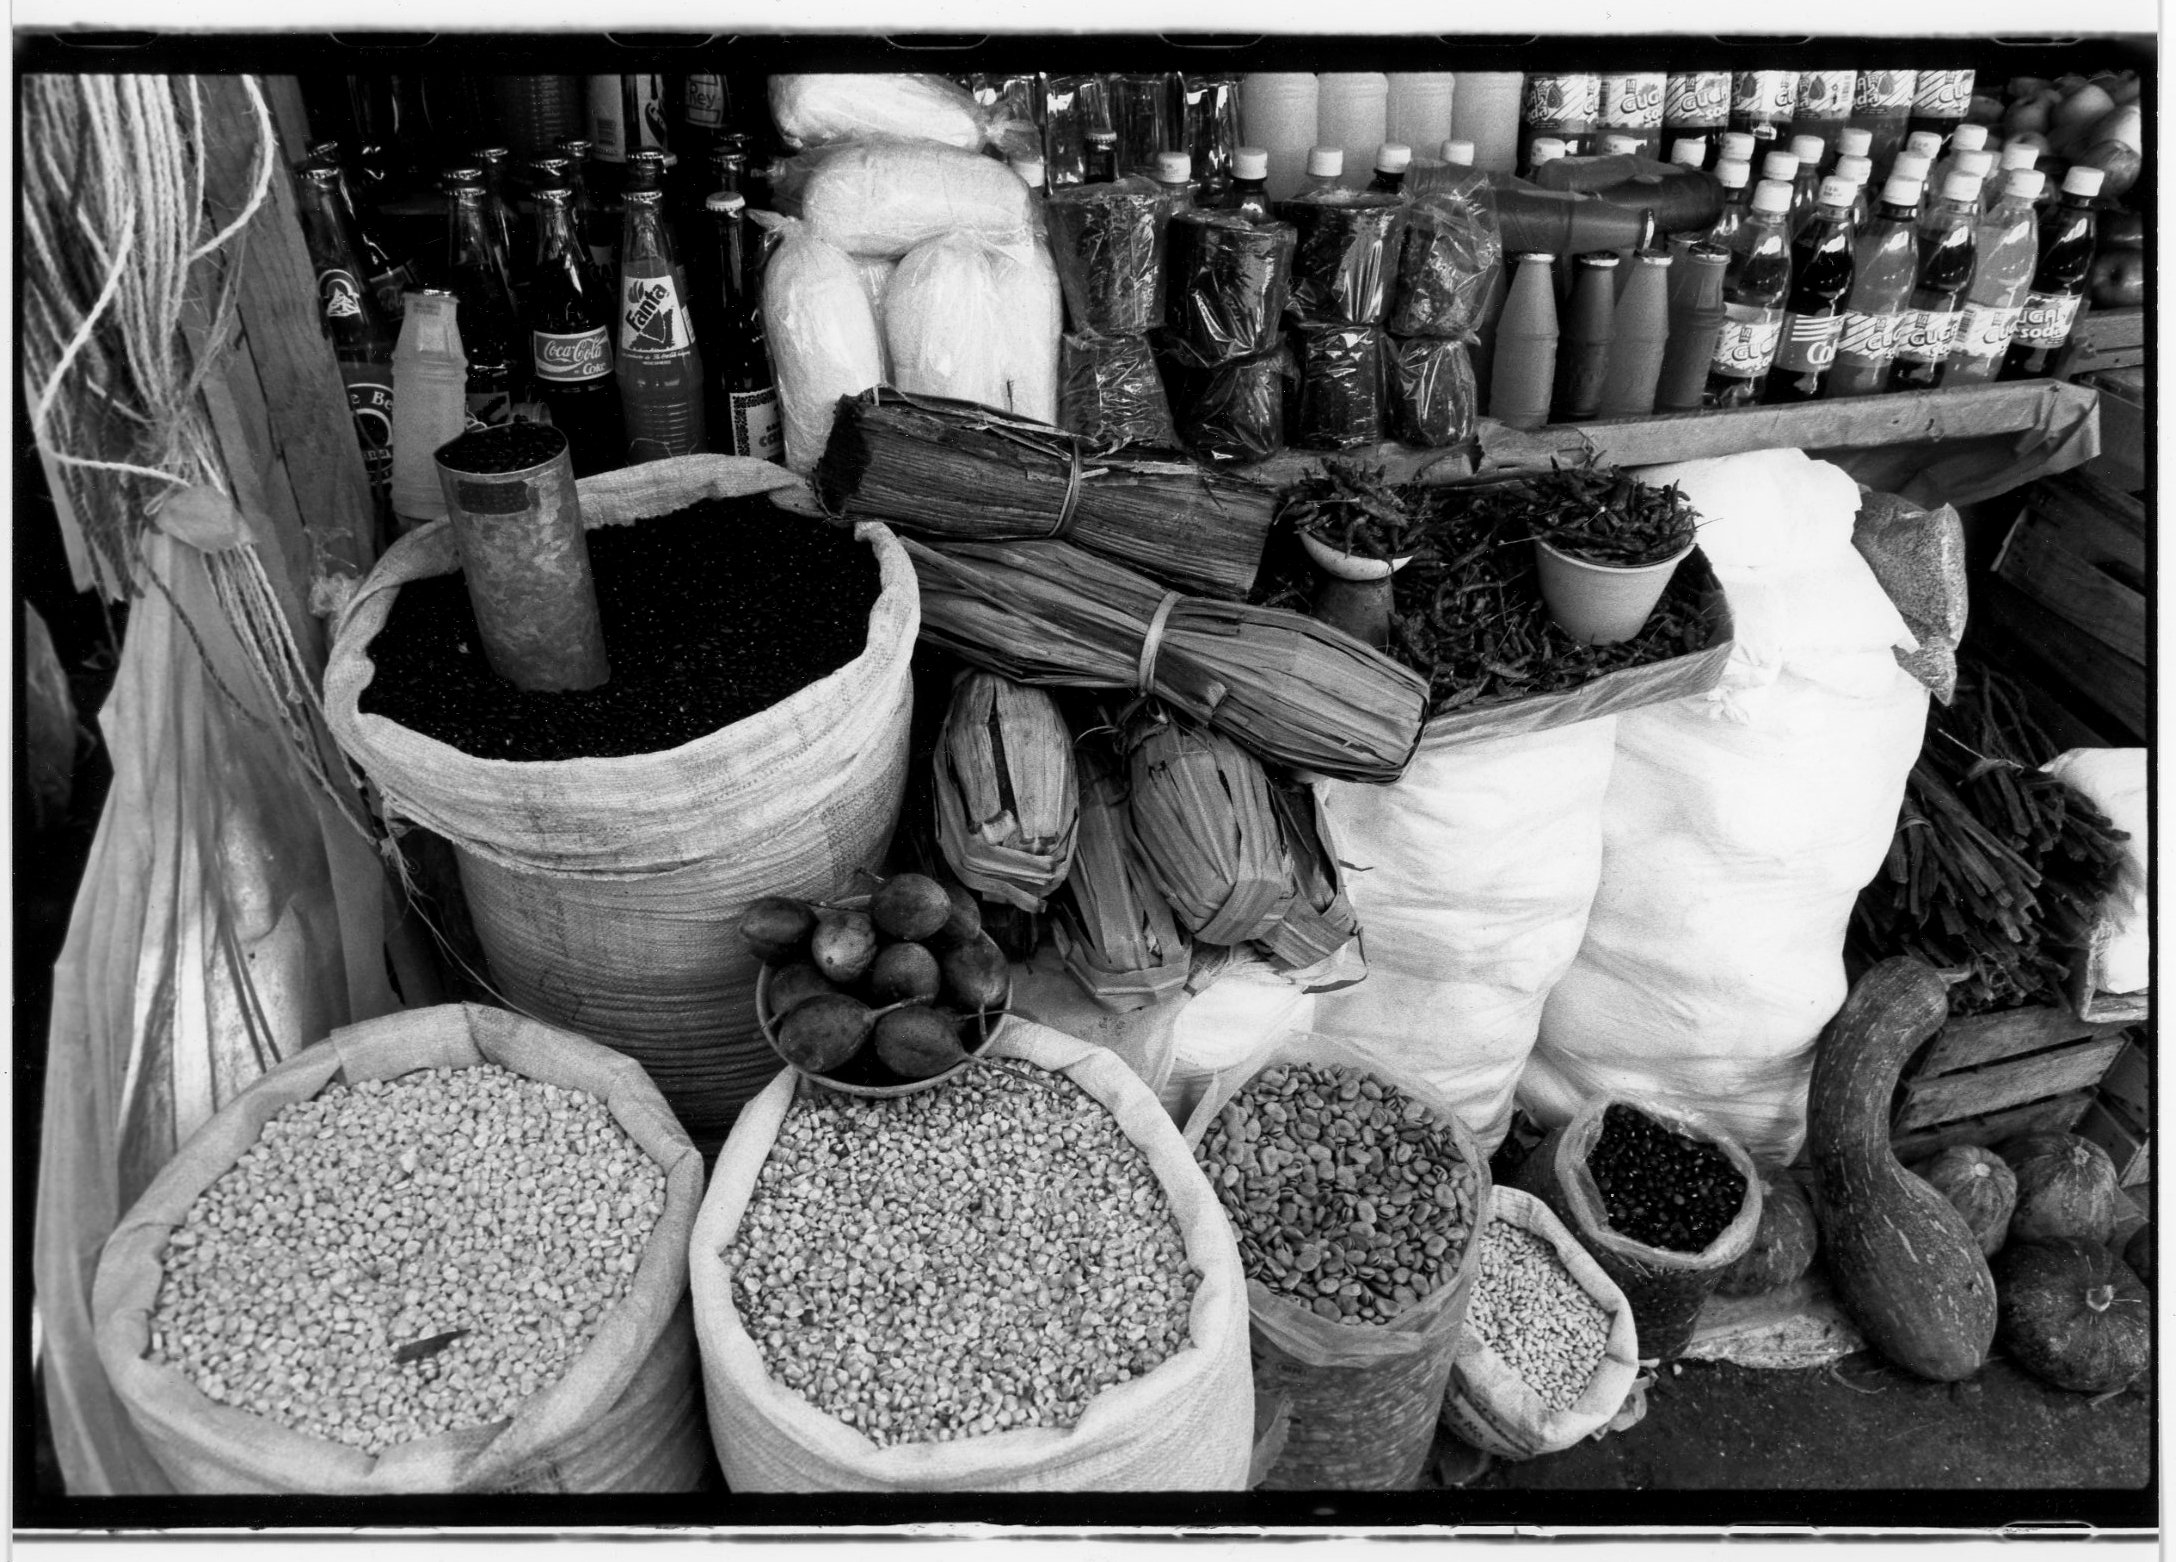  Tobacco puros for sale in market in San Cristobal de las Casas, Chiapis, Mexico 1998 